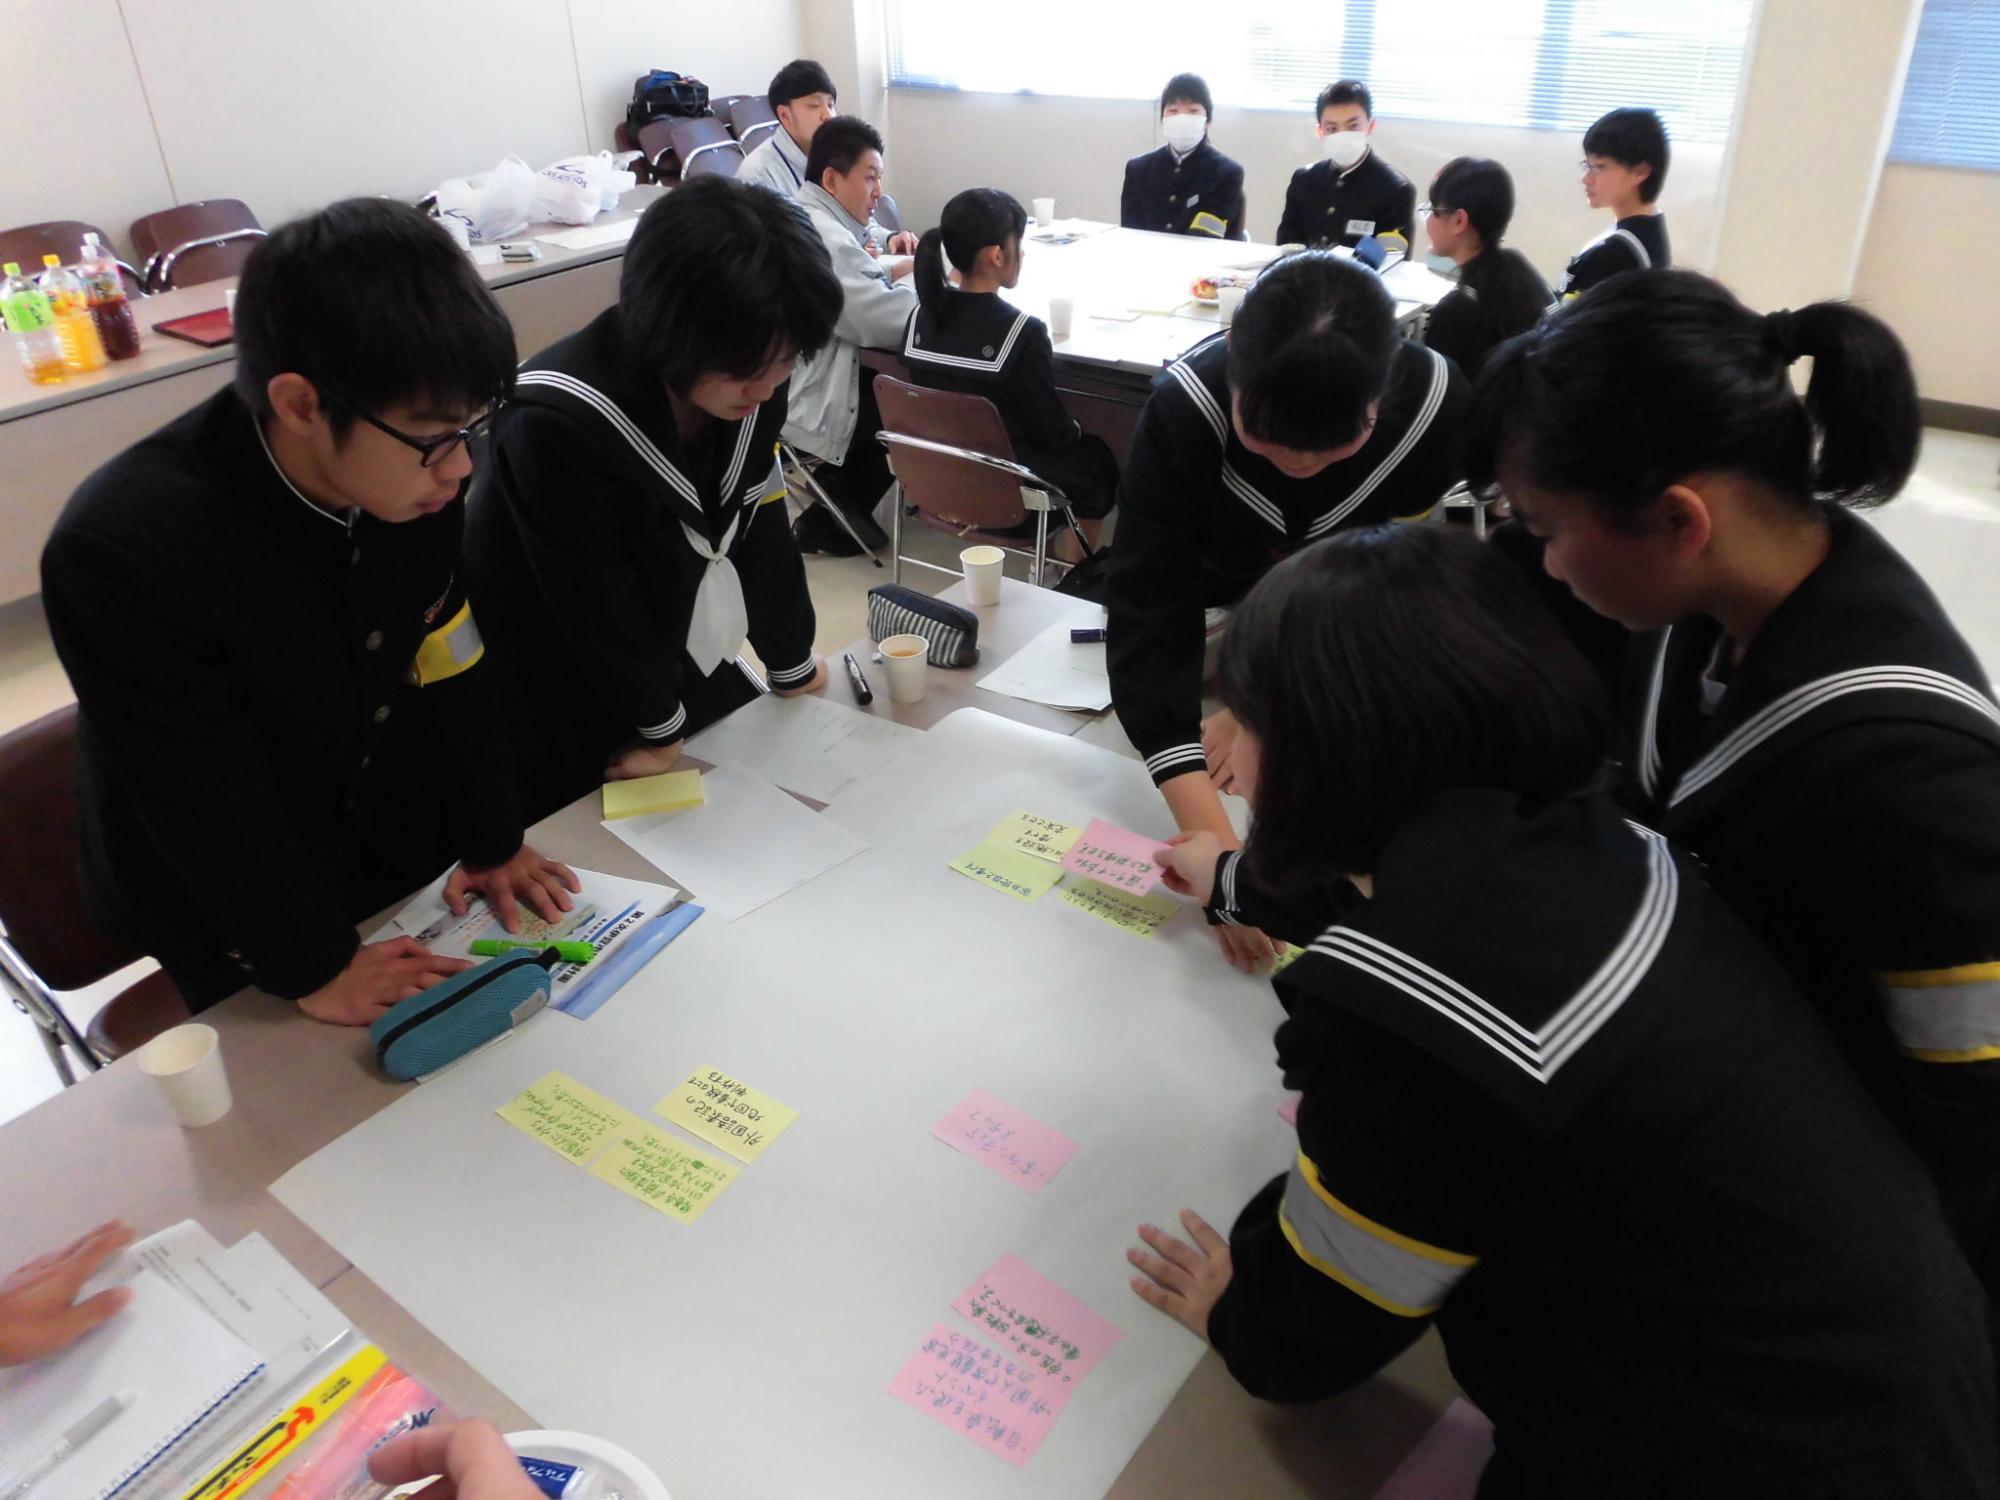 大きな紙にアイデアを書き込んだ黄色やピンクの付箋を貼り付け話し合いをしている5人の生徒たちの写真